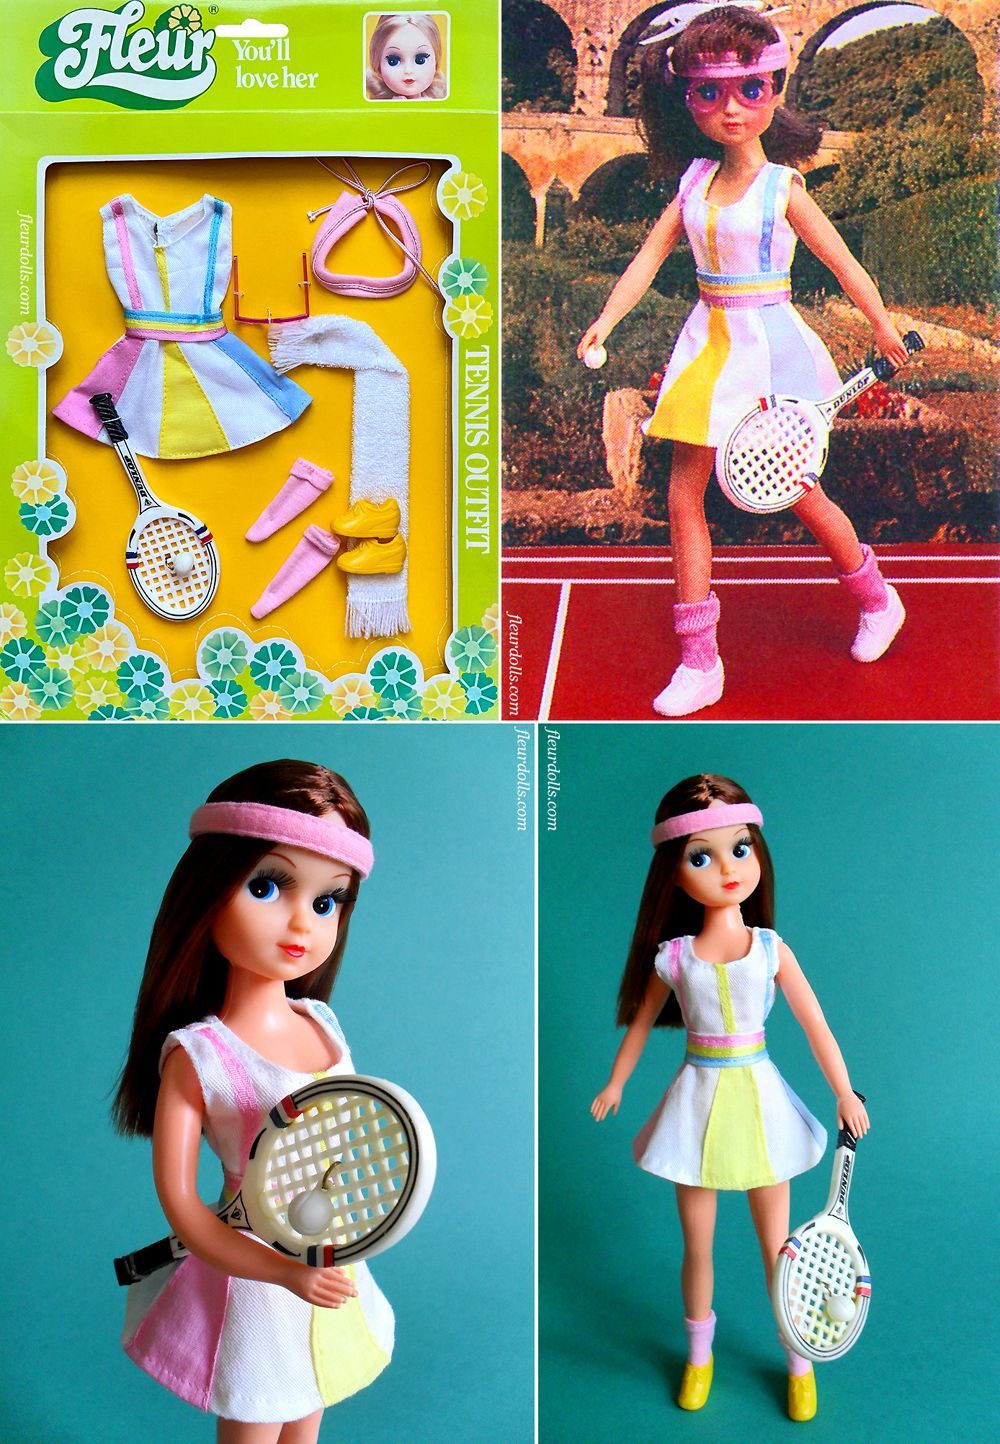 Fleur doll tennis outfit NRFB fashion in box white pink Otto Simon 1287